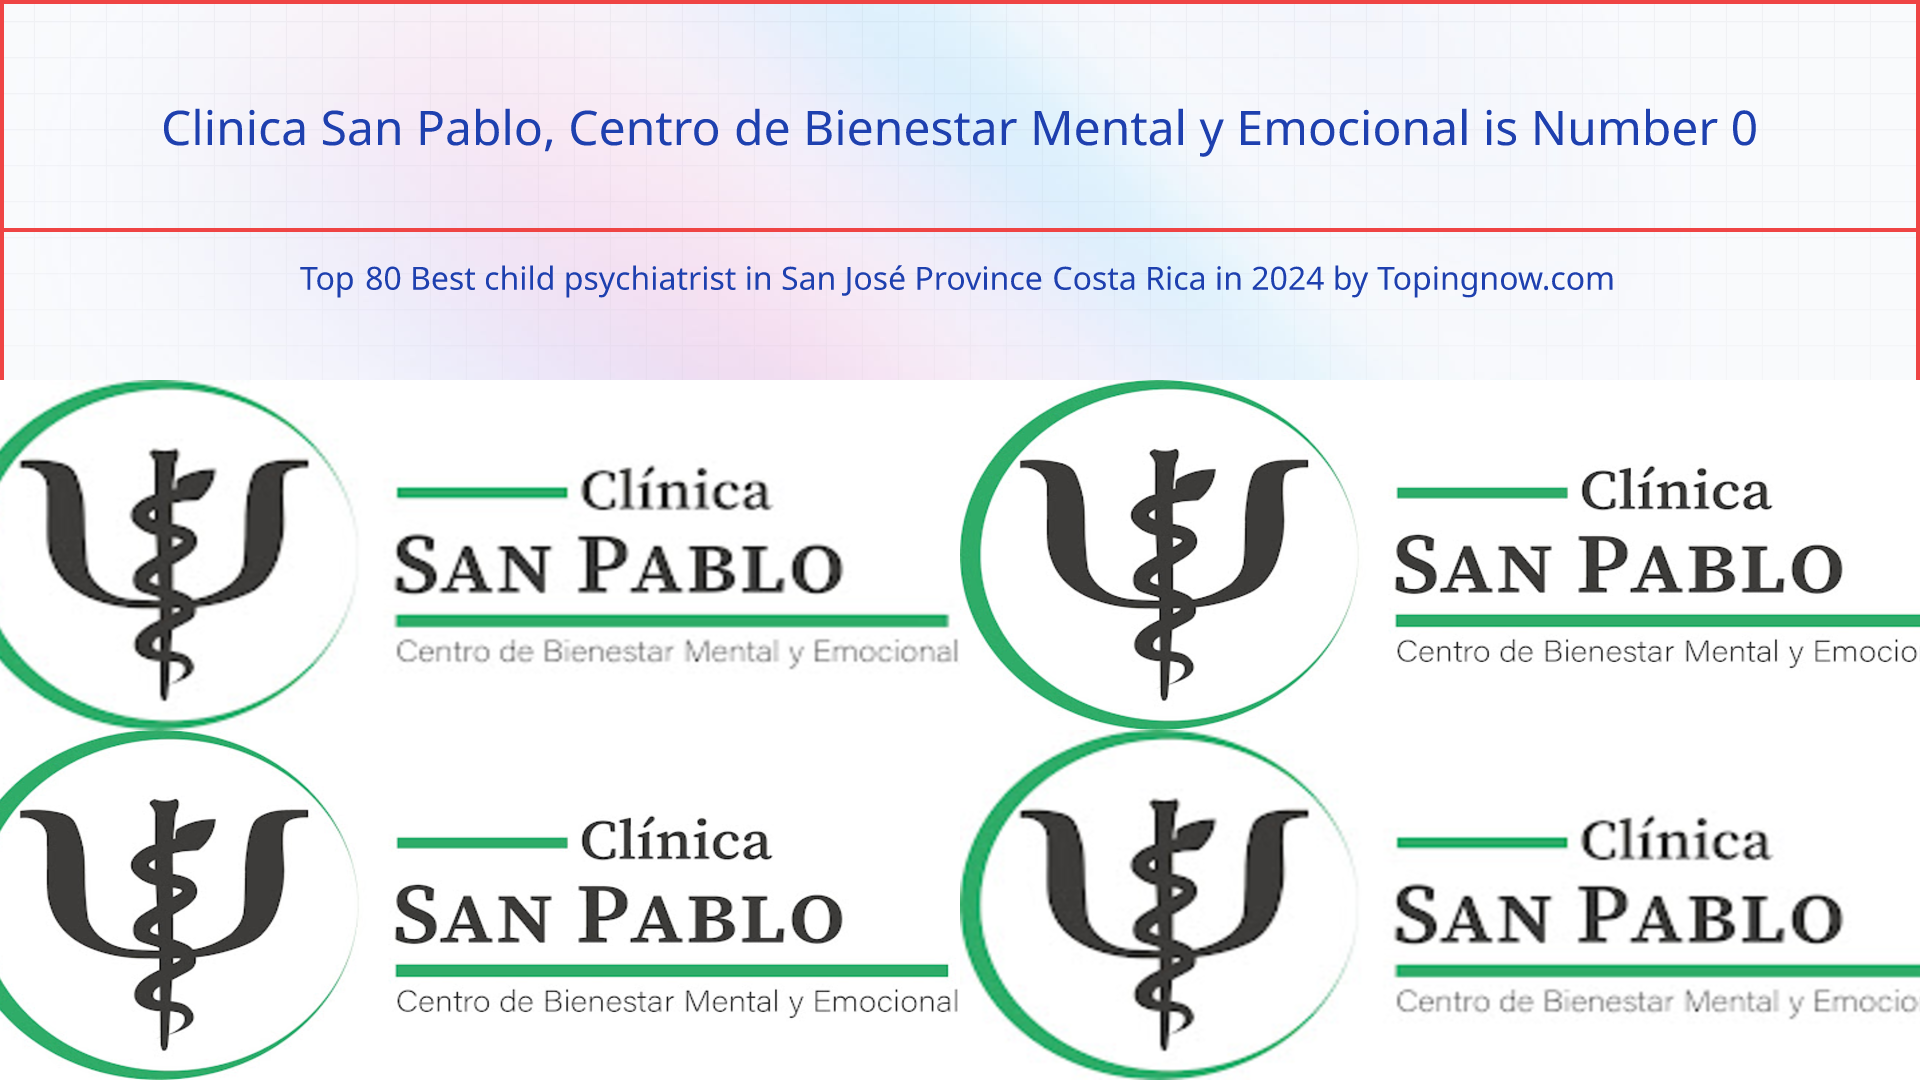 Clinica San Pablo, Centro de Bienestar Mental y Emocional: Top 80 Best child psychiatrist in San José Province Costa Rica in 2024